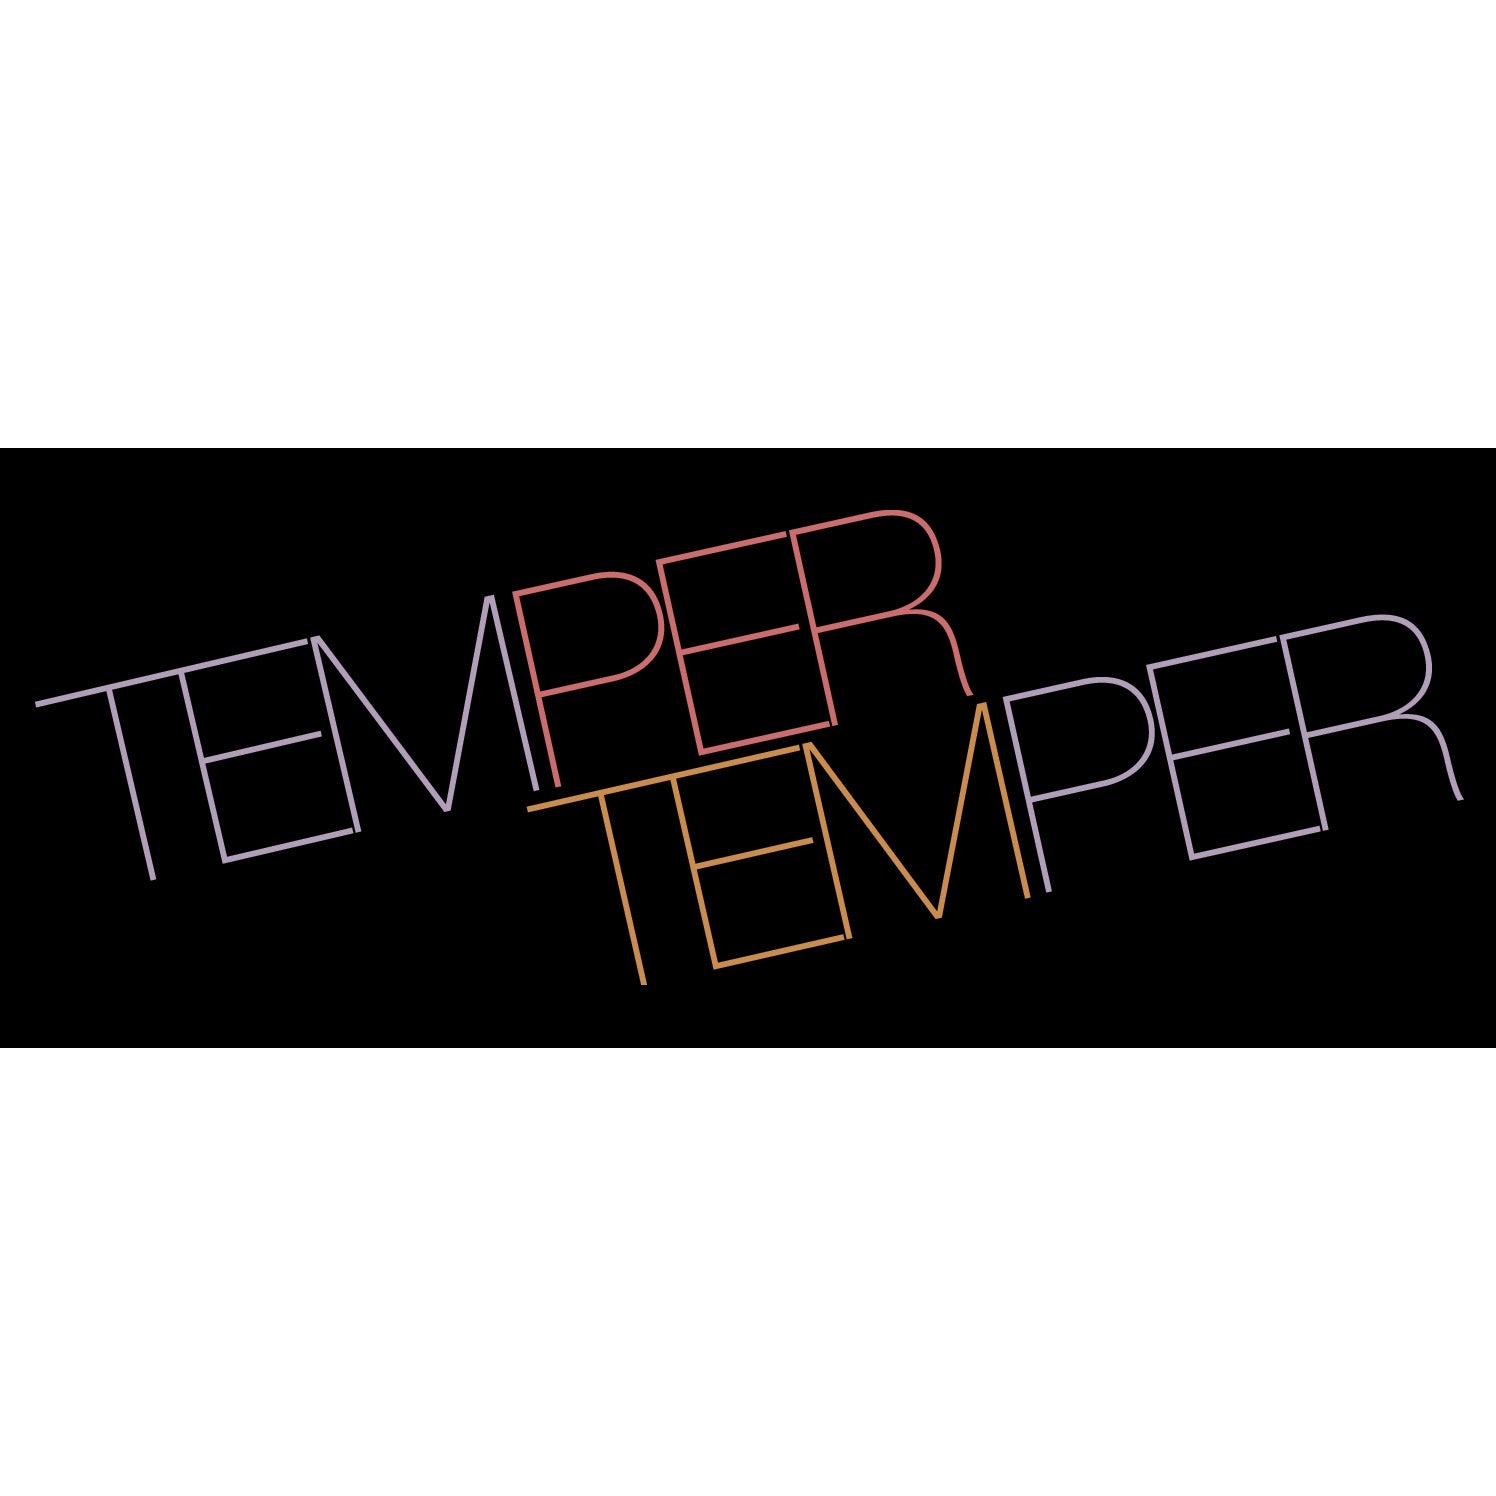 REVST127 Temper Temper "Logo" - Sticker 